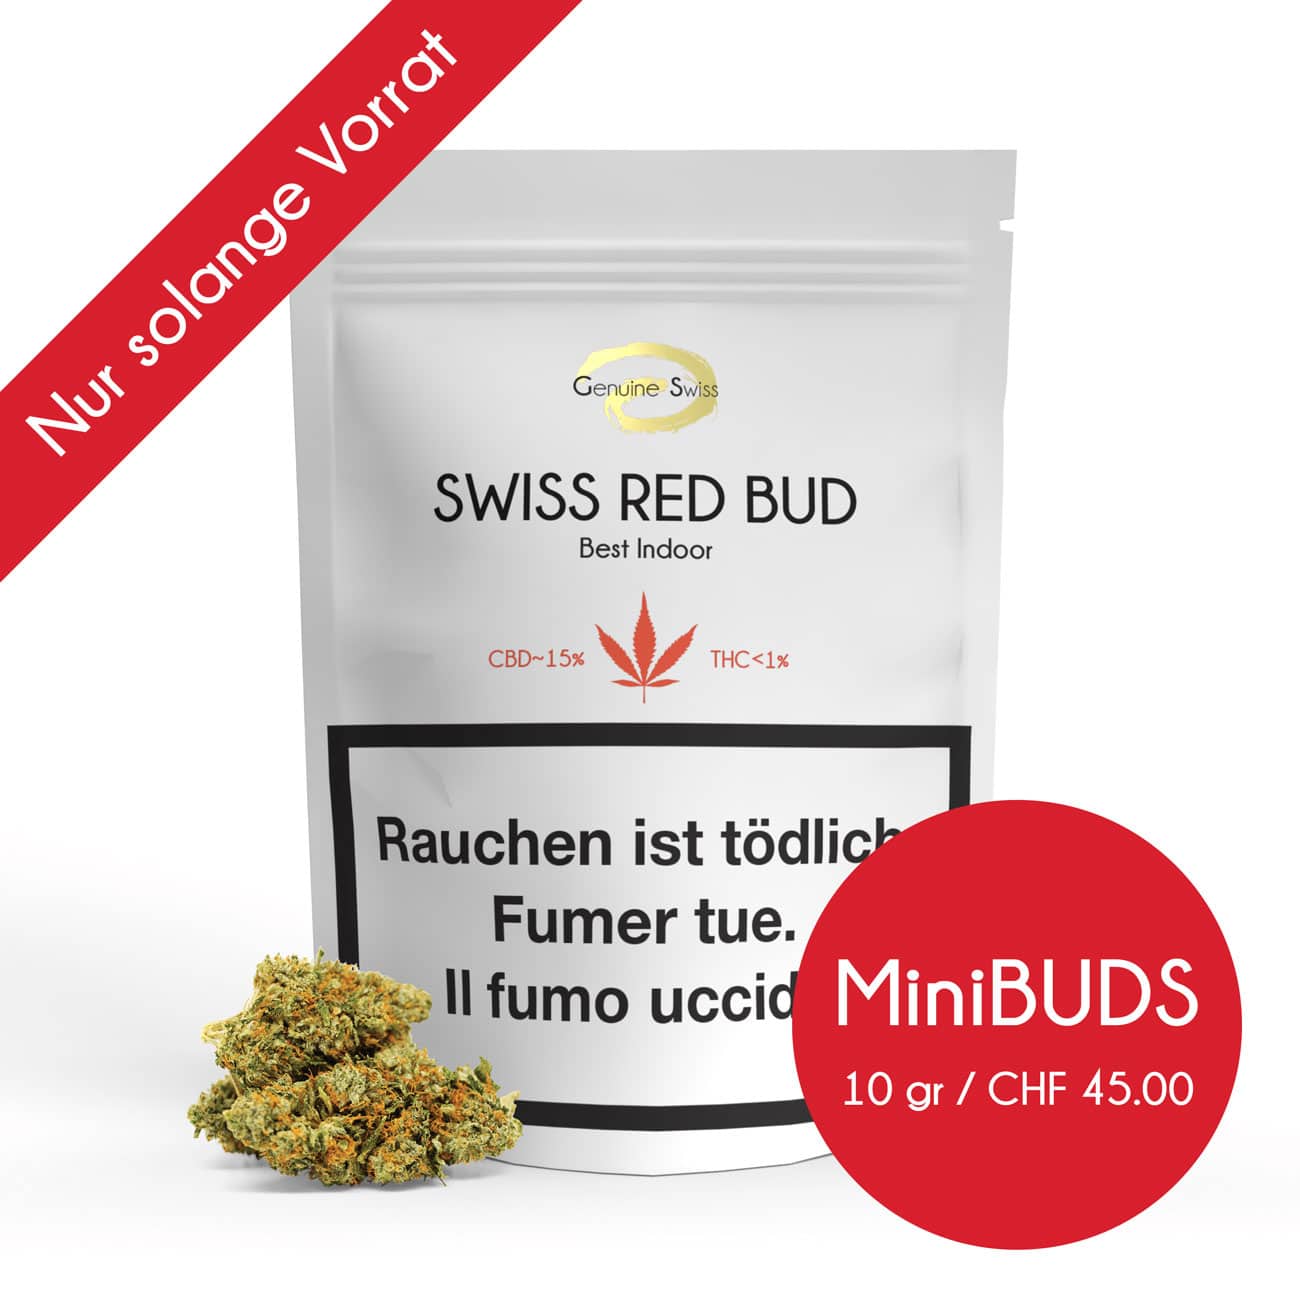 Genuine Swiss Swiss Red Minibuds, Genuine Swiss